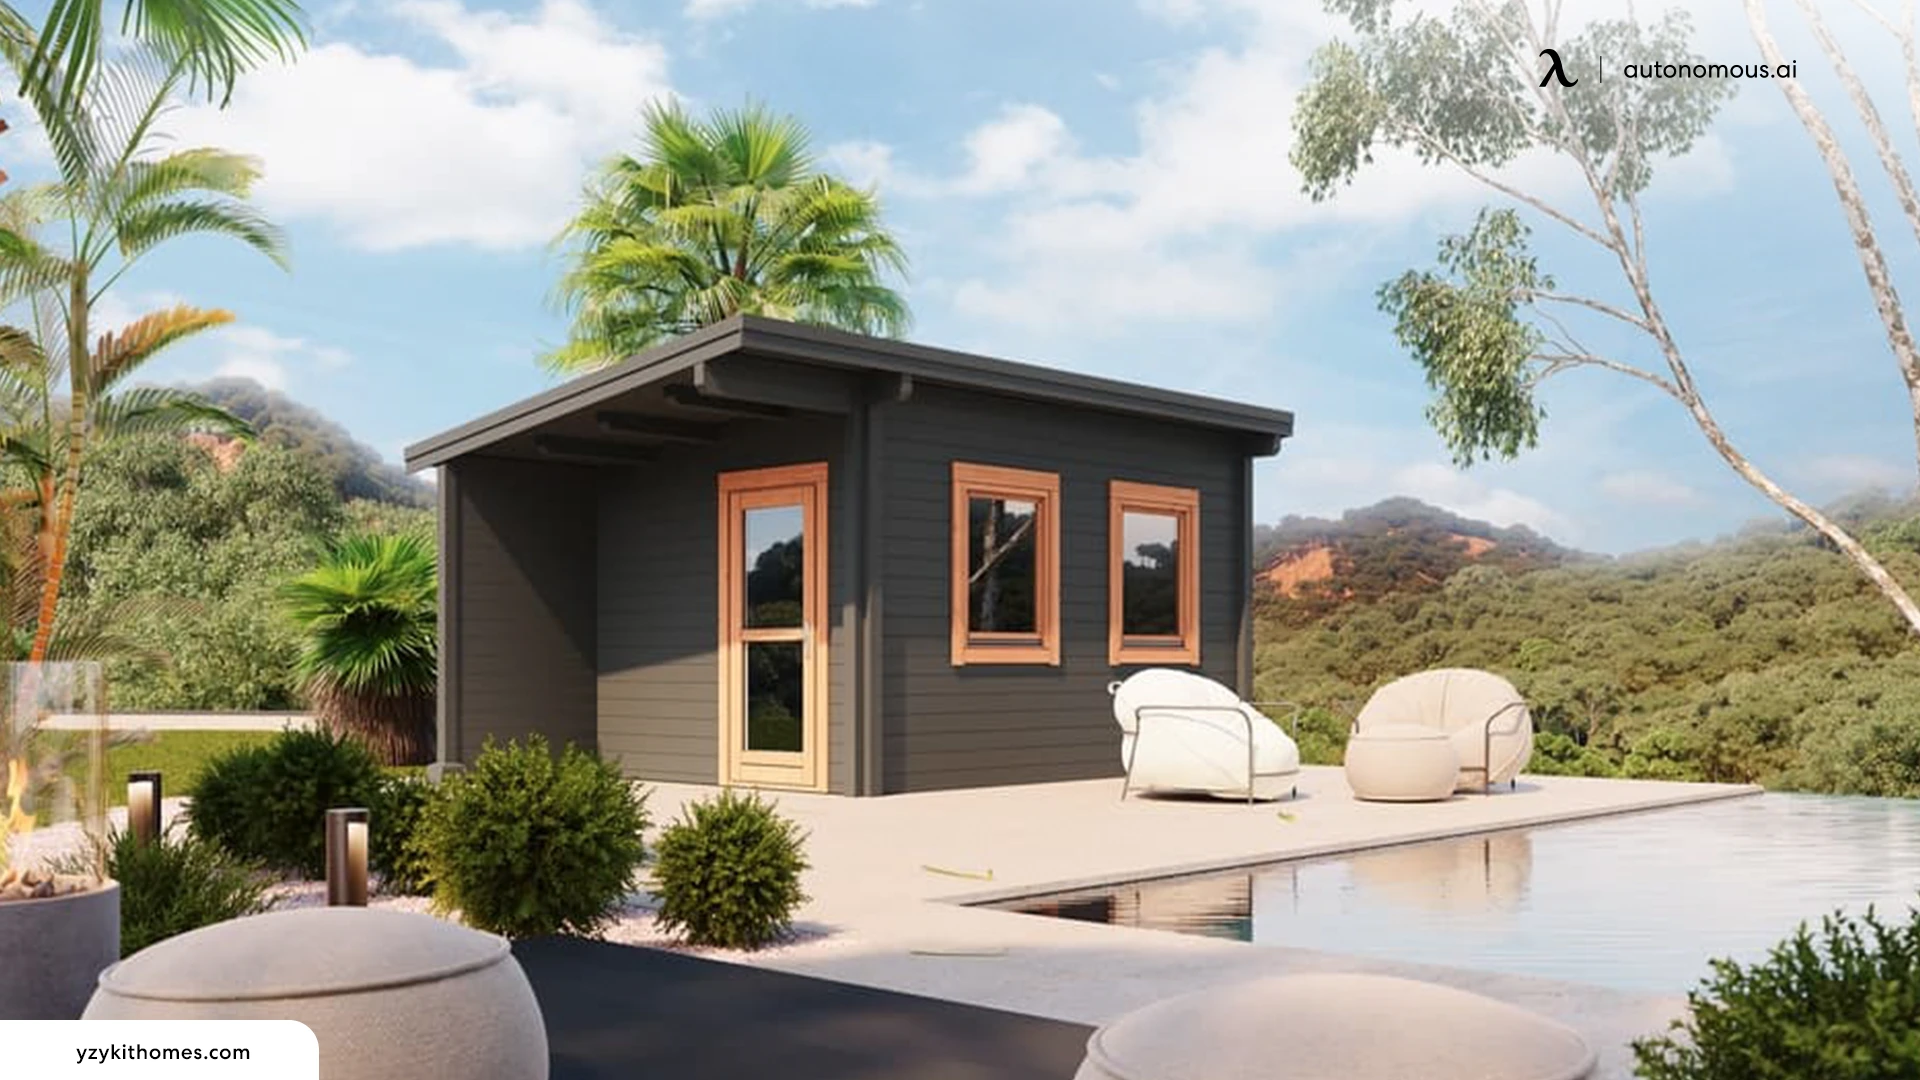 Add a Modern Prefab Cabin - backyard Airbnb